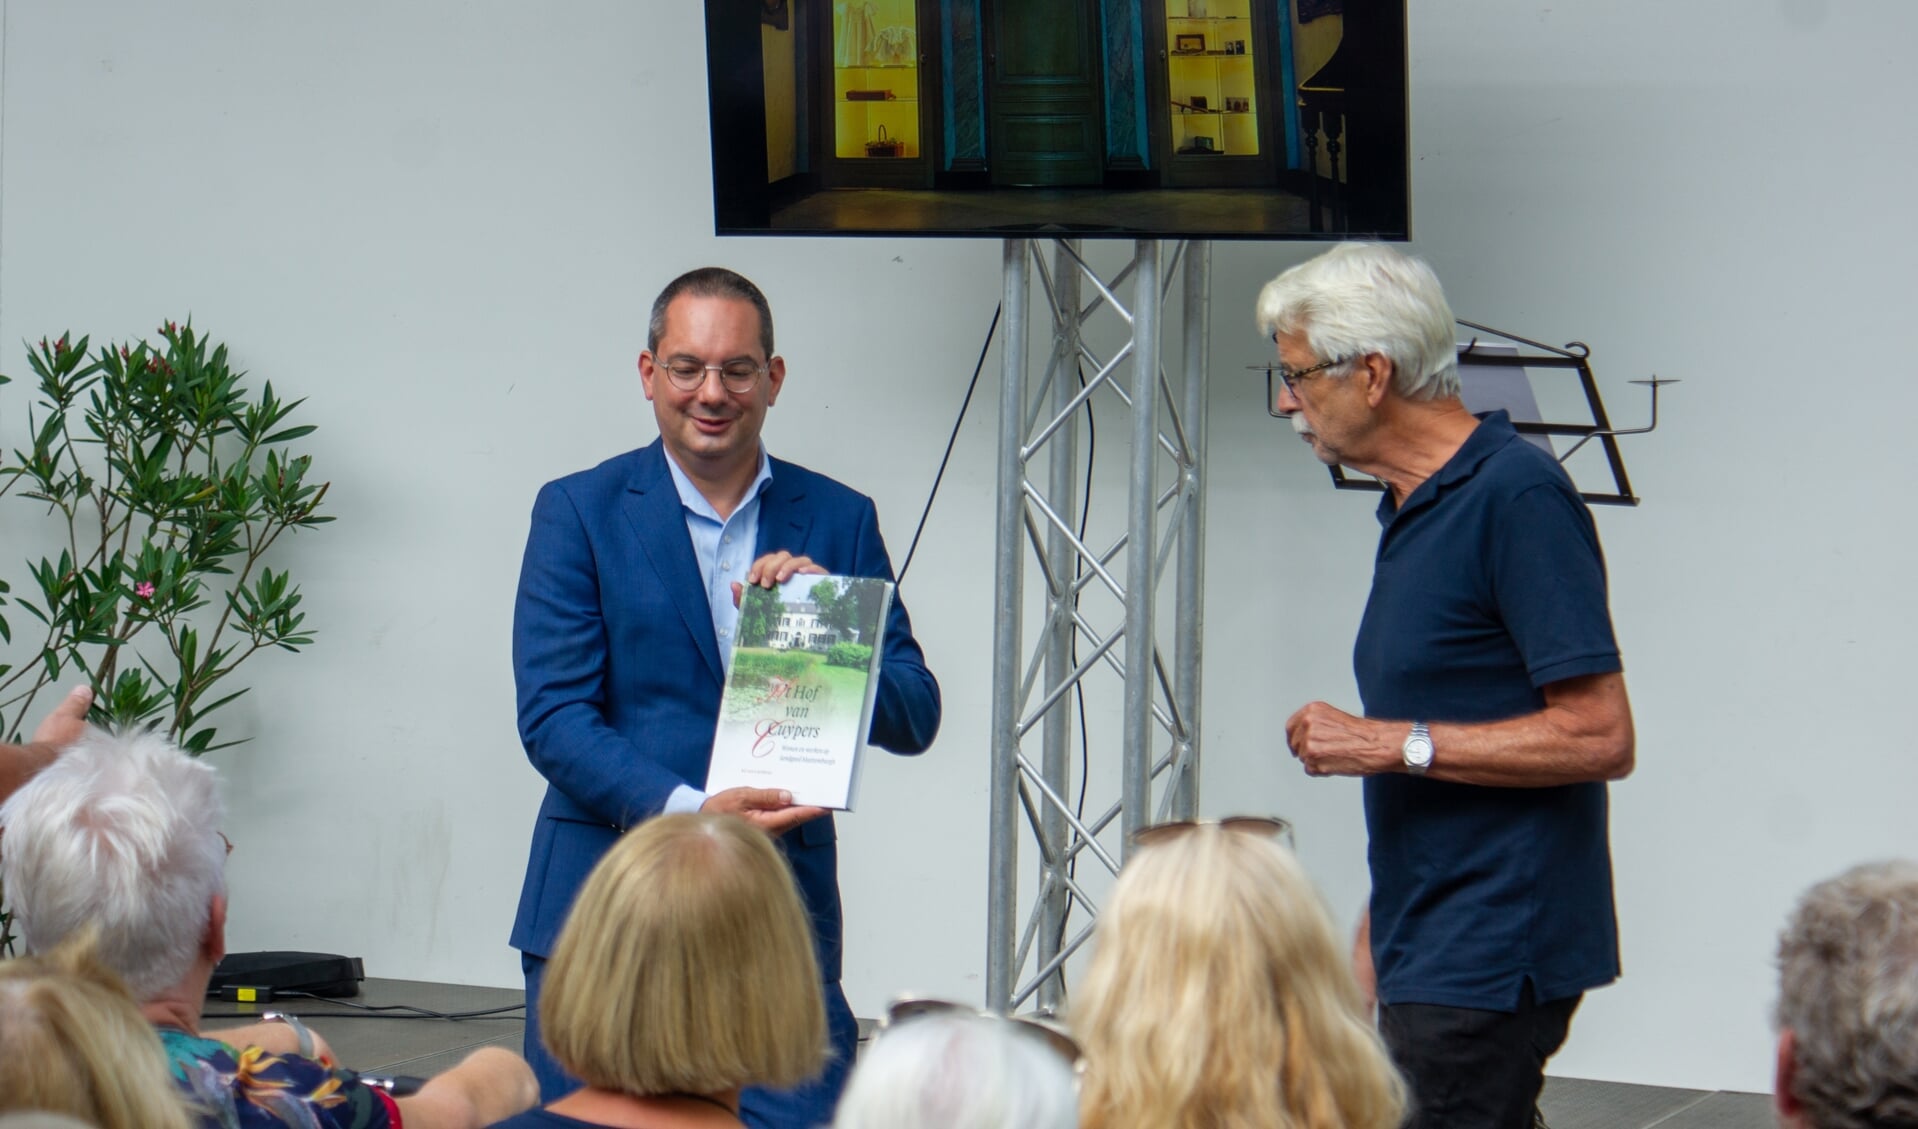 Uitreiking boek 't Hof van Cuypers door Ad van Loenhout (rechts) aan de burgemeester.